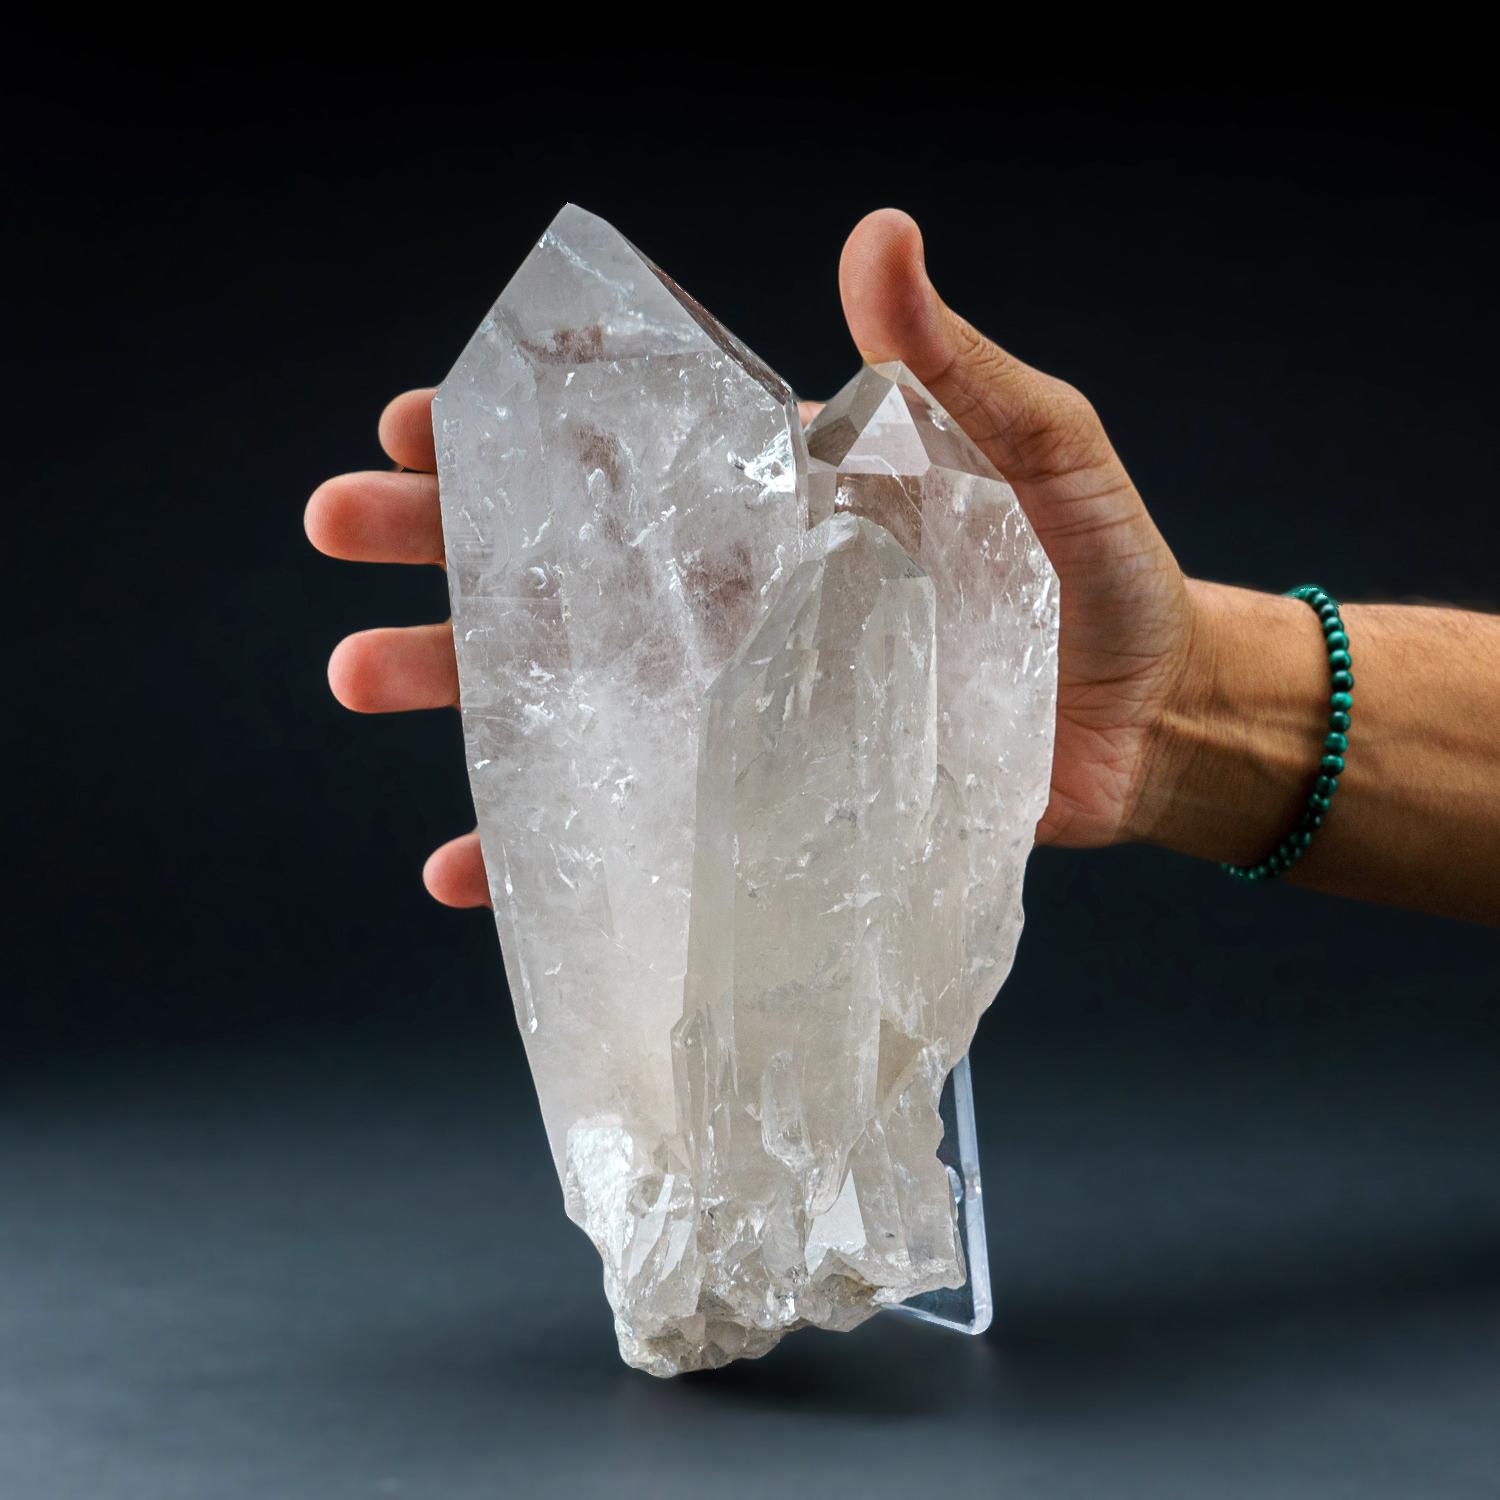 Top Qualität Brasilianischer Quarz Punkt Kristall Cluster. Dieser durchscheinende Kristallcluster besteht aus Quarzspitzenkristallen mit glänzenden, hochreflektierenden Oberflächen. 

Klarer Quarz fördert die Klarheit der Gedanken und die